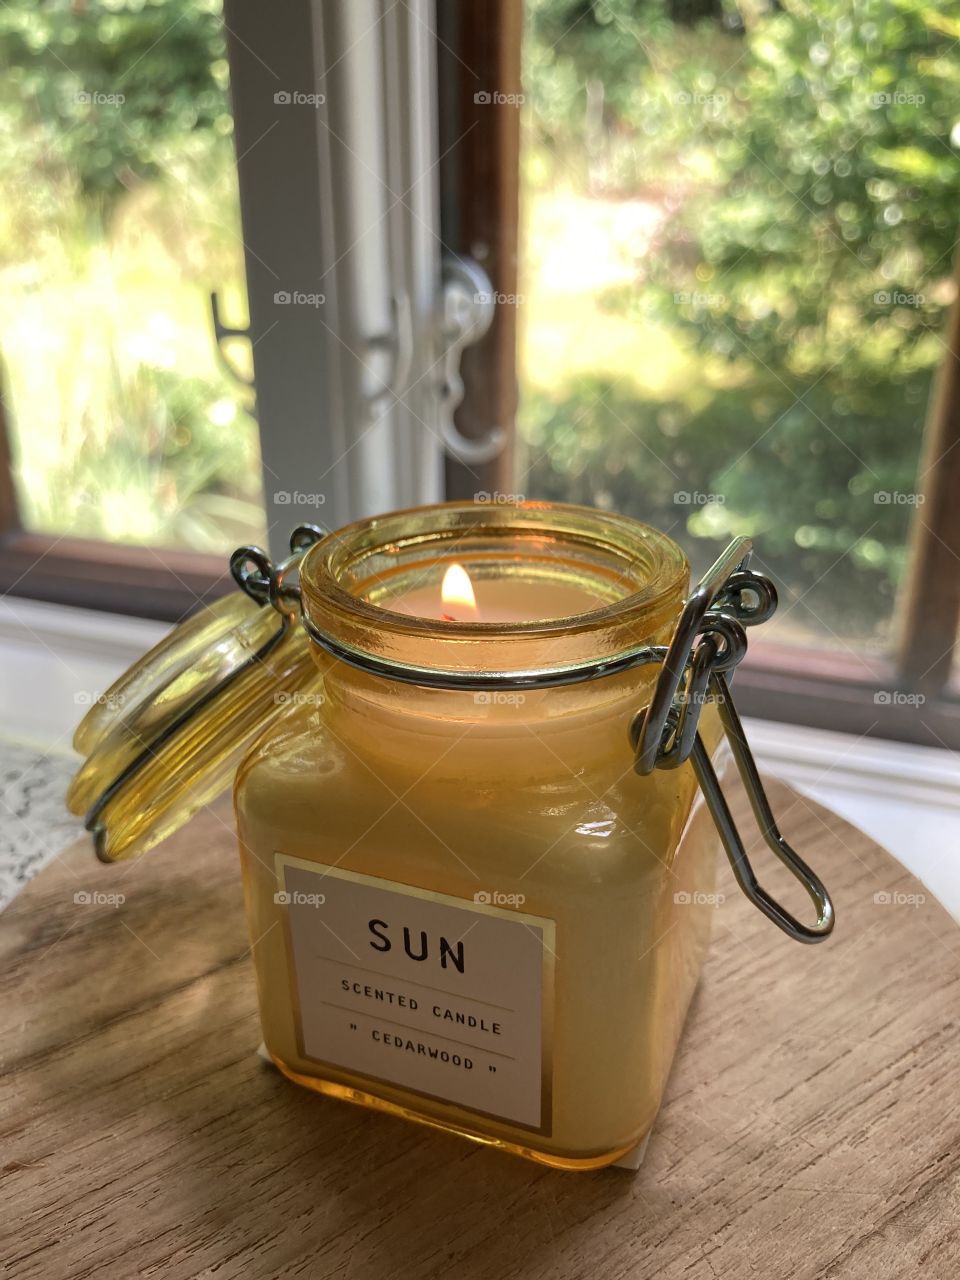 Sun in a jar